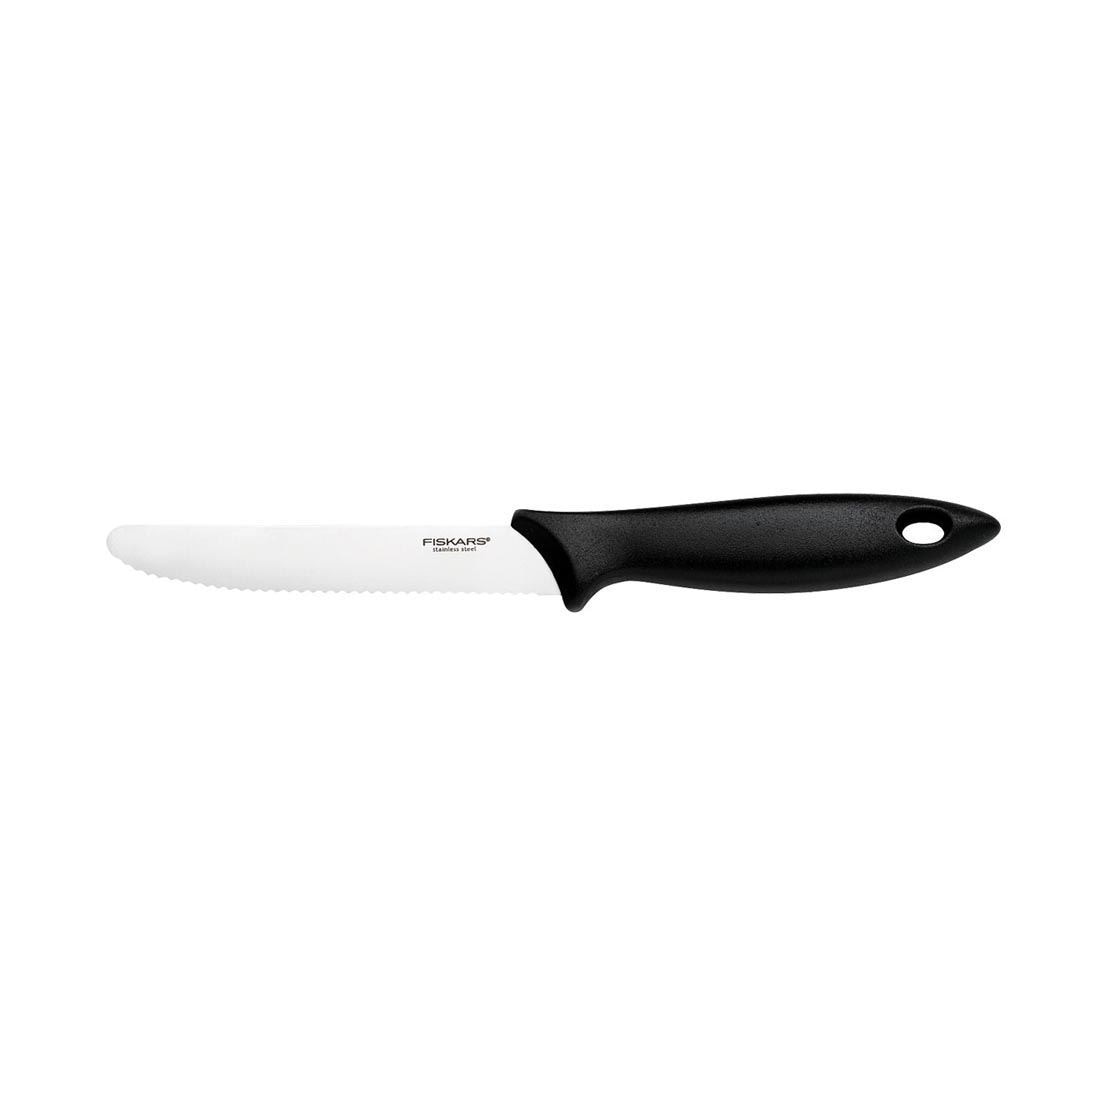 Couteaux de cuisine et accessoires Fiskars : Des outils de cuisine  tranchants et ergonomiques